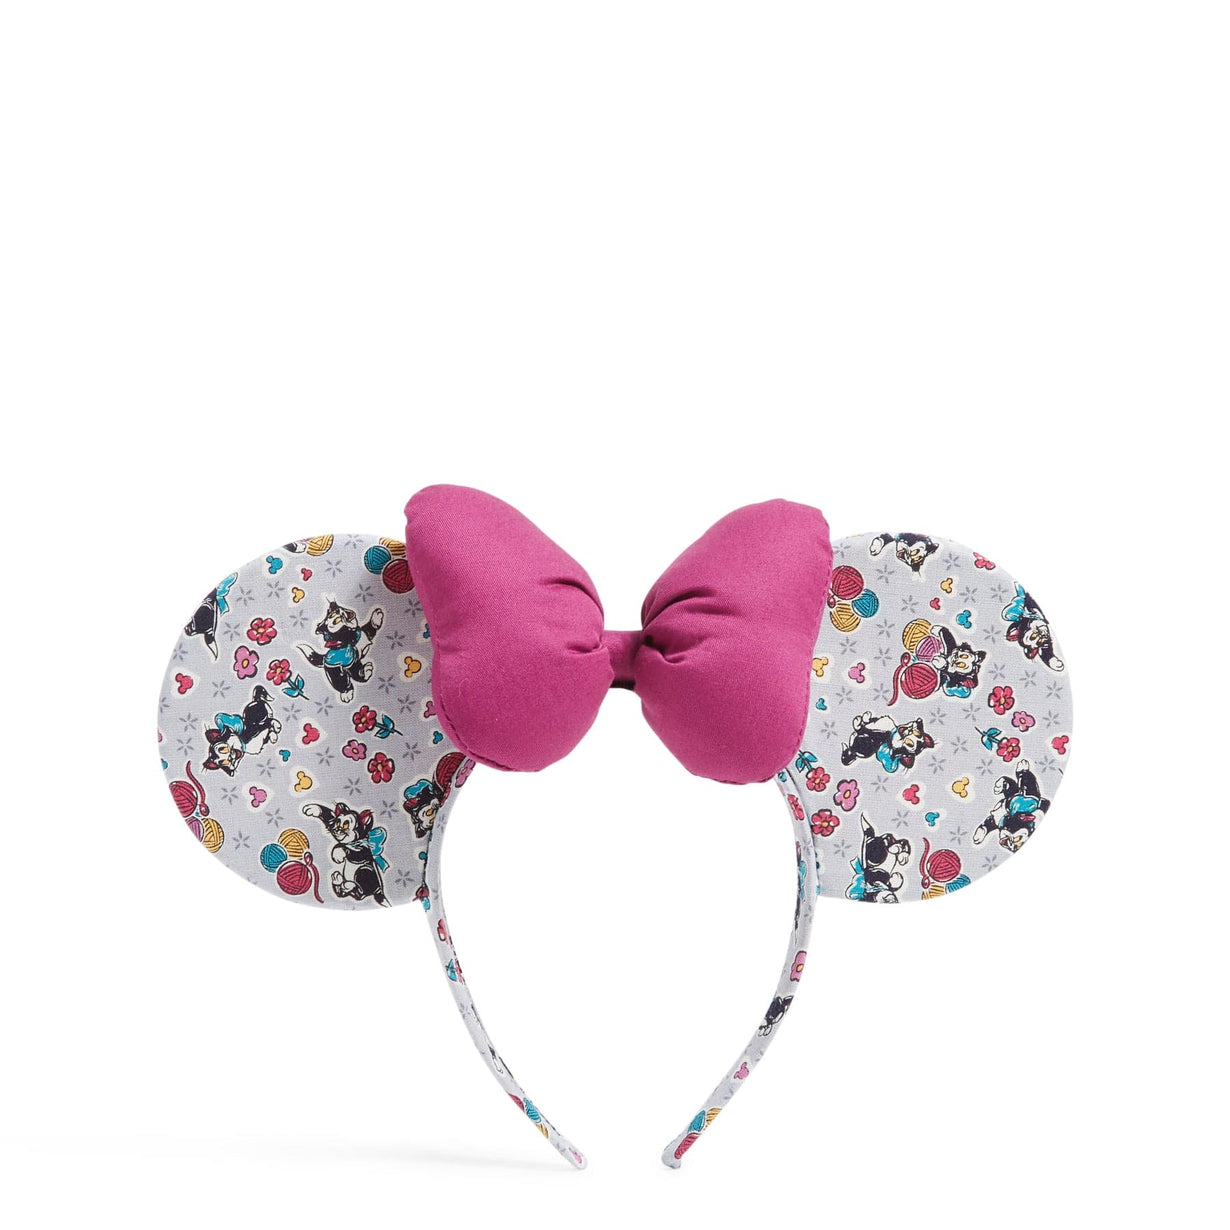 NWT DISNEY PARKS Minnie Mouse Ears Bow Keychain/Bag Charm